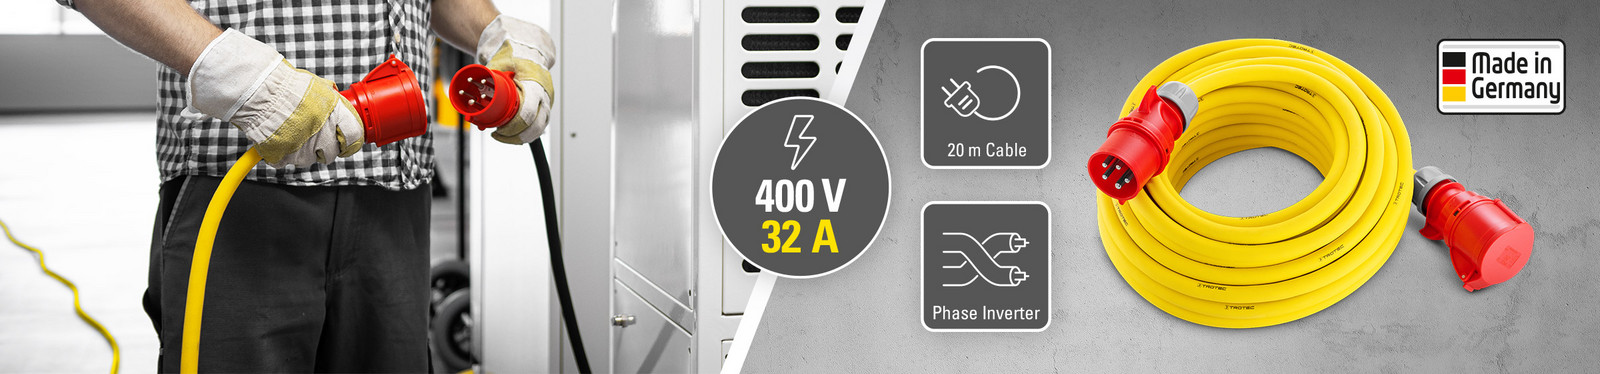 Profesionální prodlužovací kabely 400 V (32 A) – Made in Germany